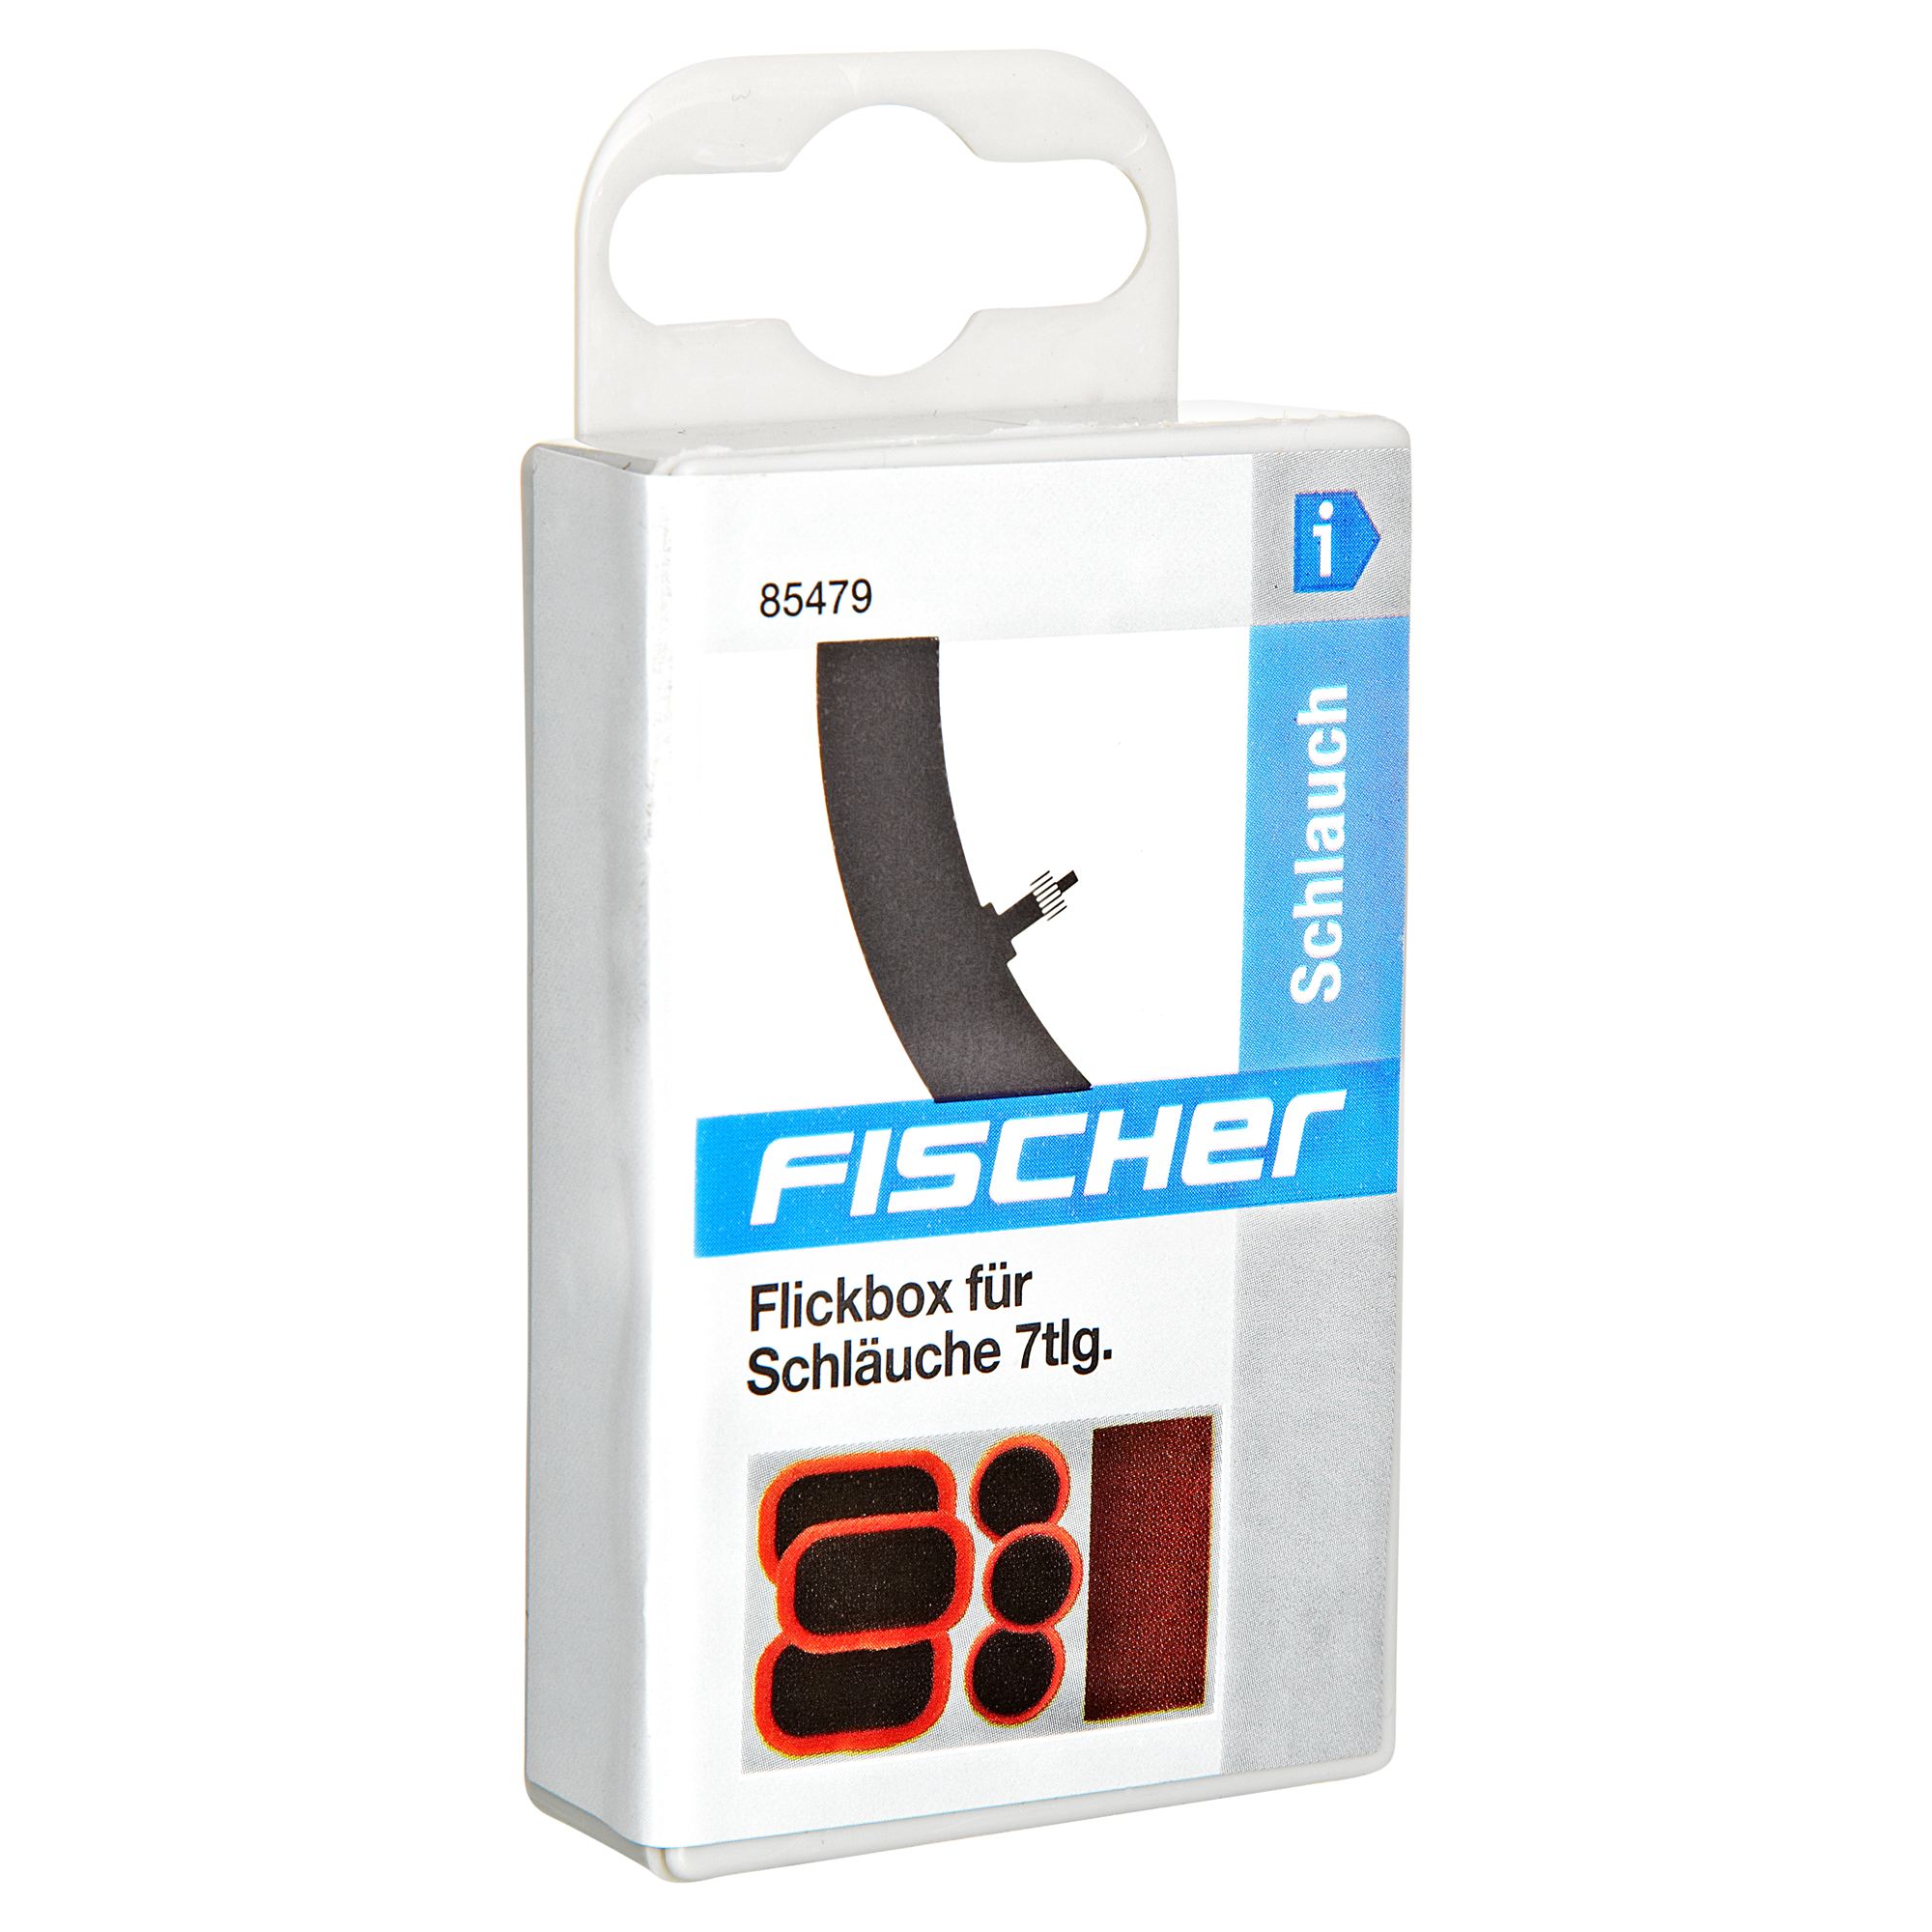 Fischer Flickbox für Fahrradschläuche 7-tlg. + product picture